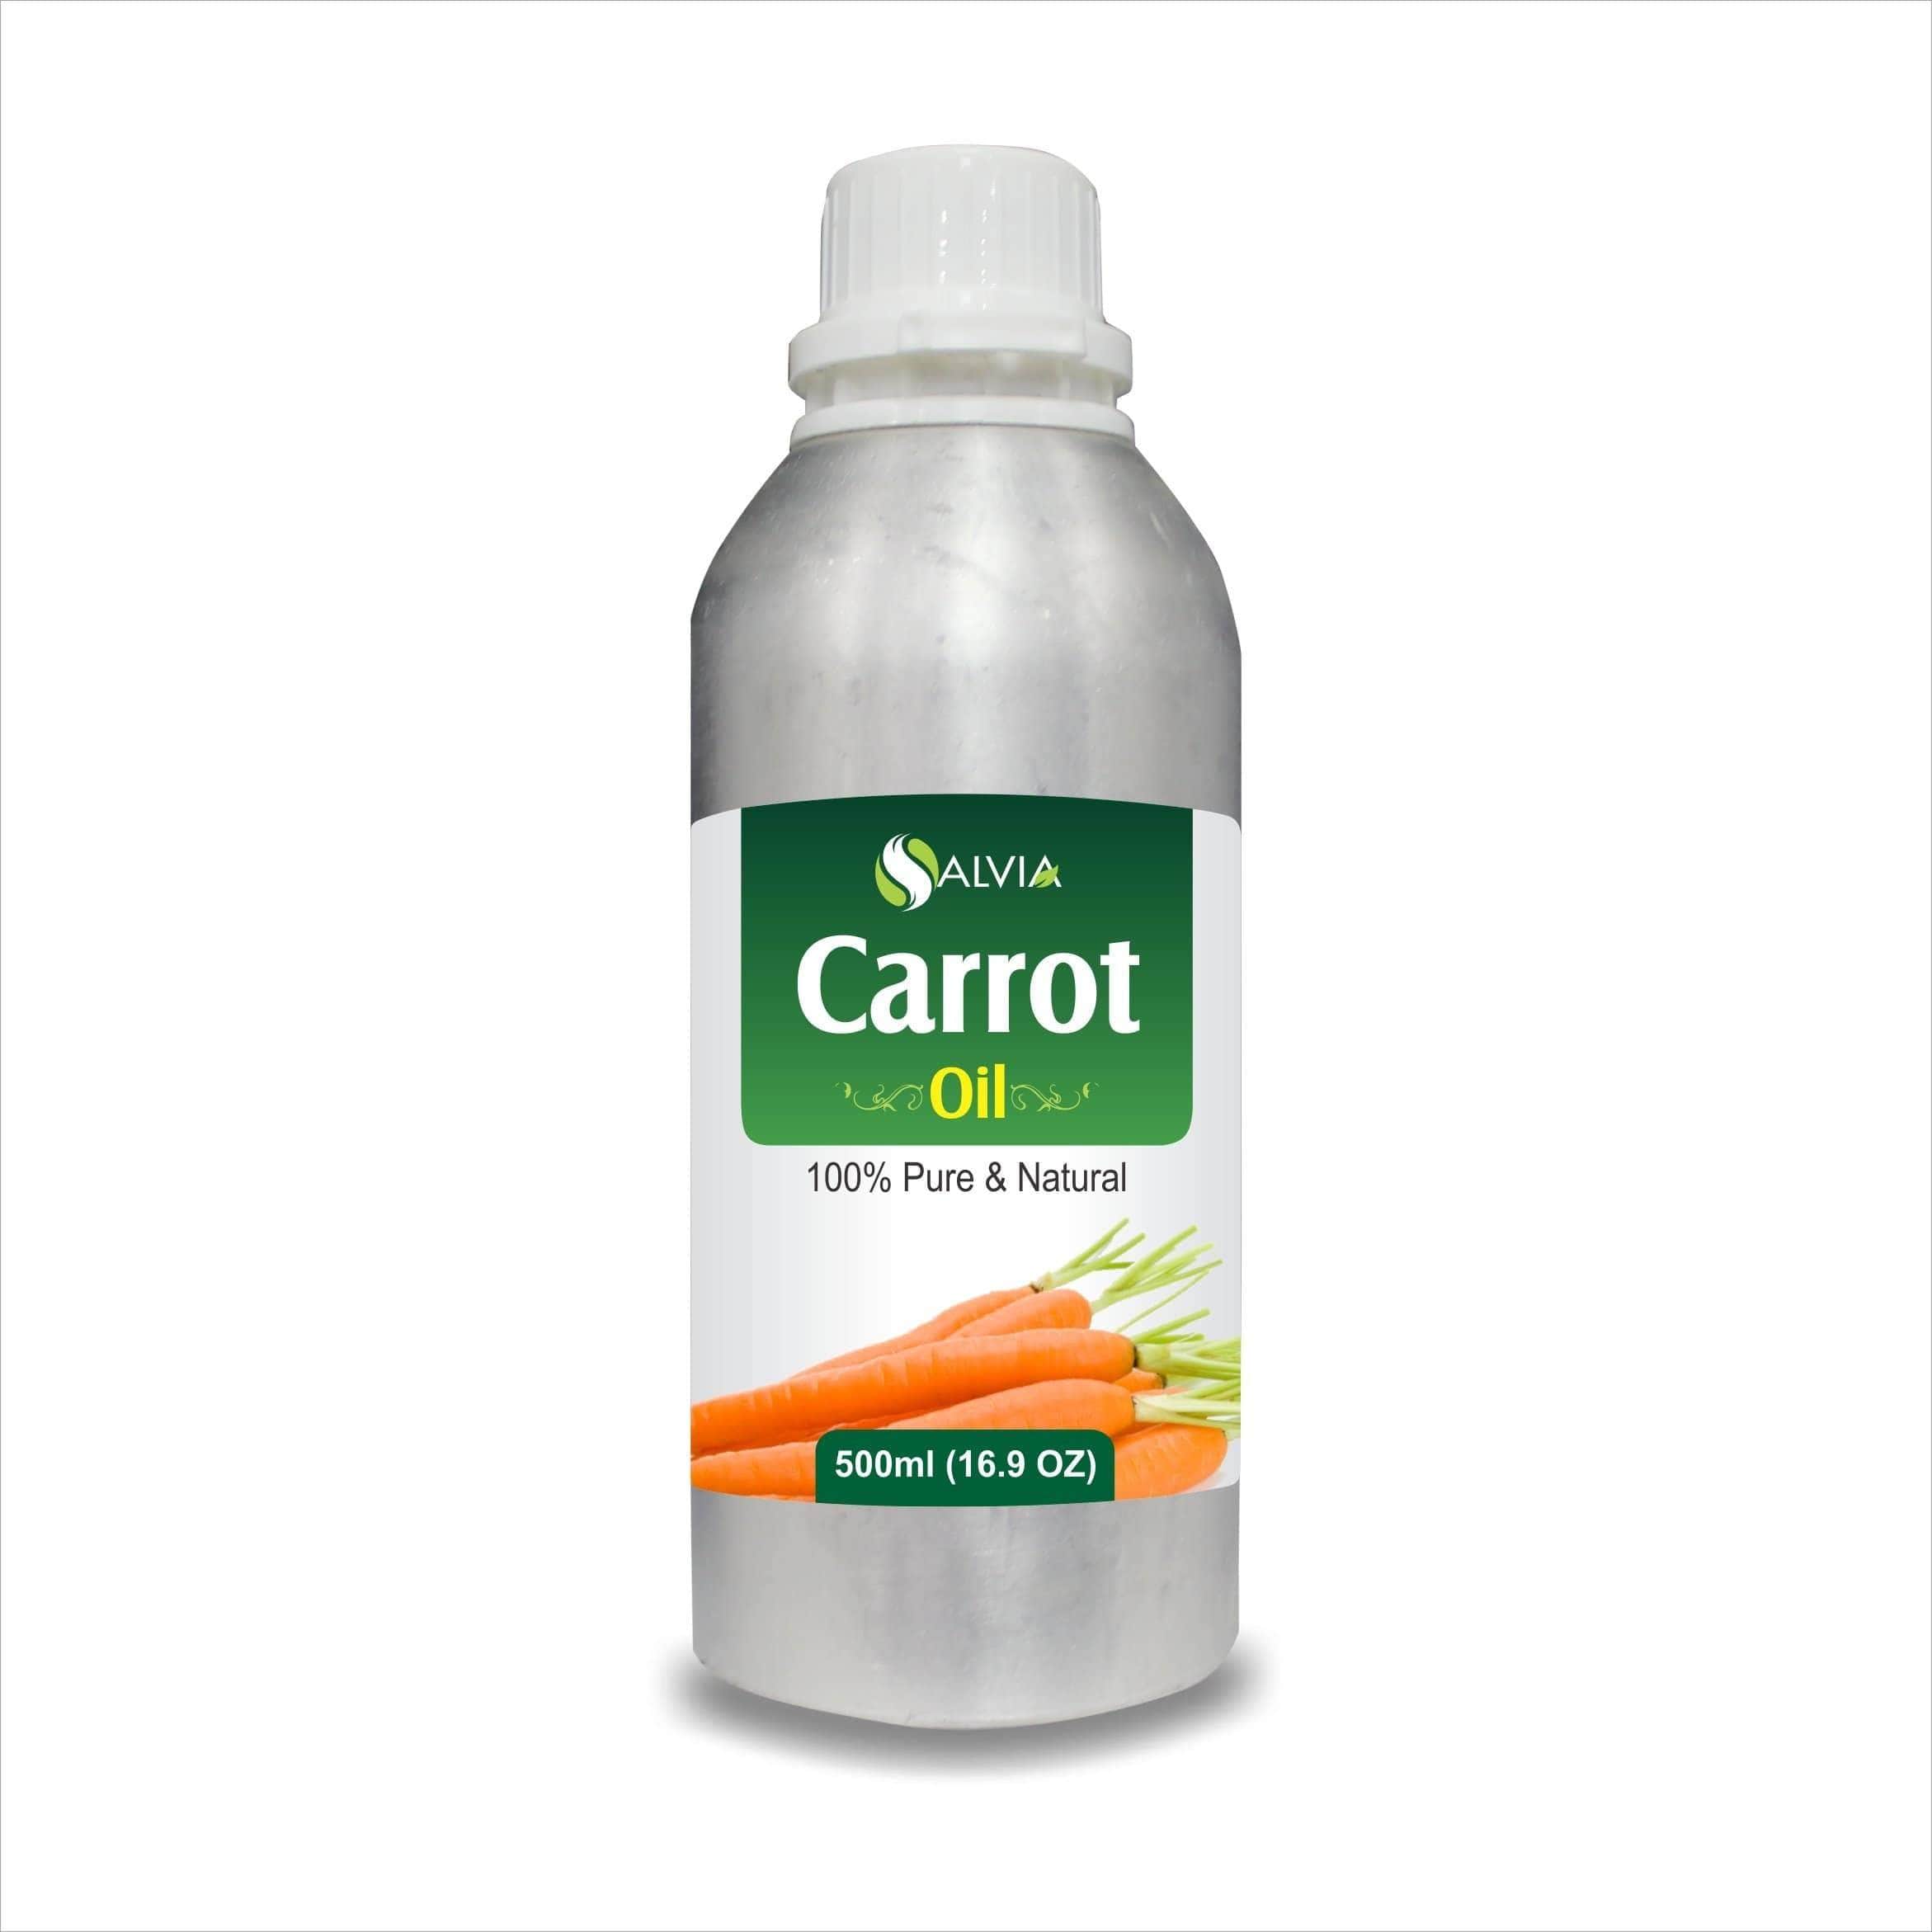 carrot oil for face